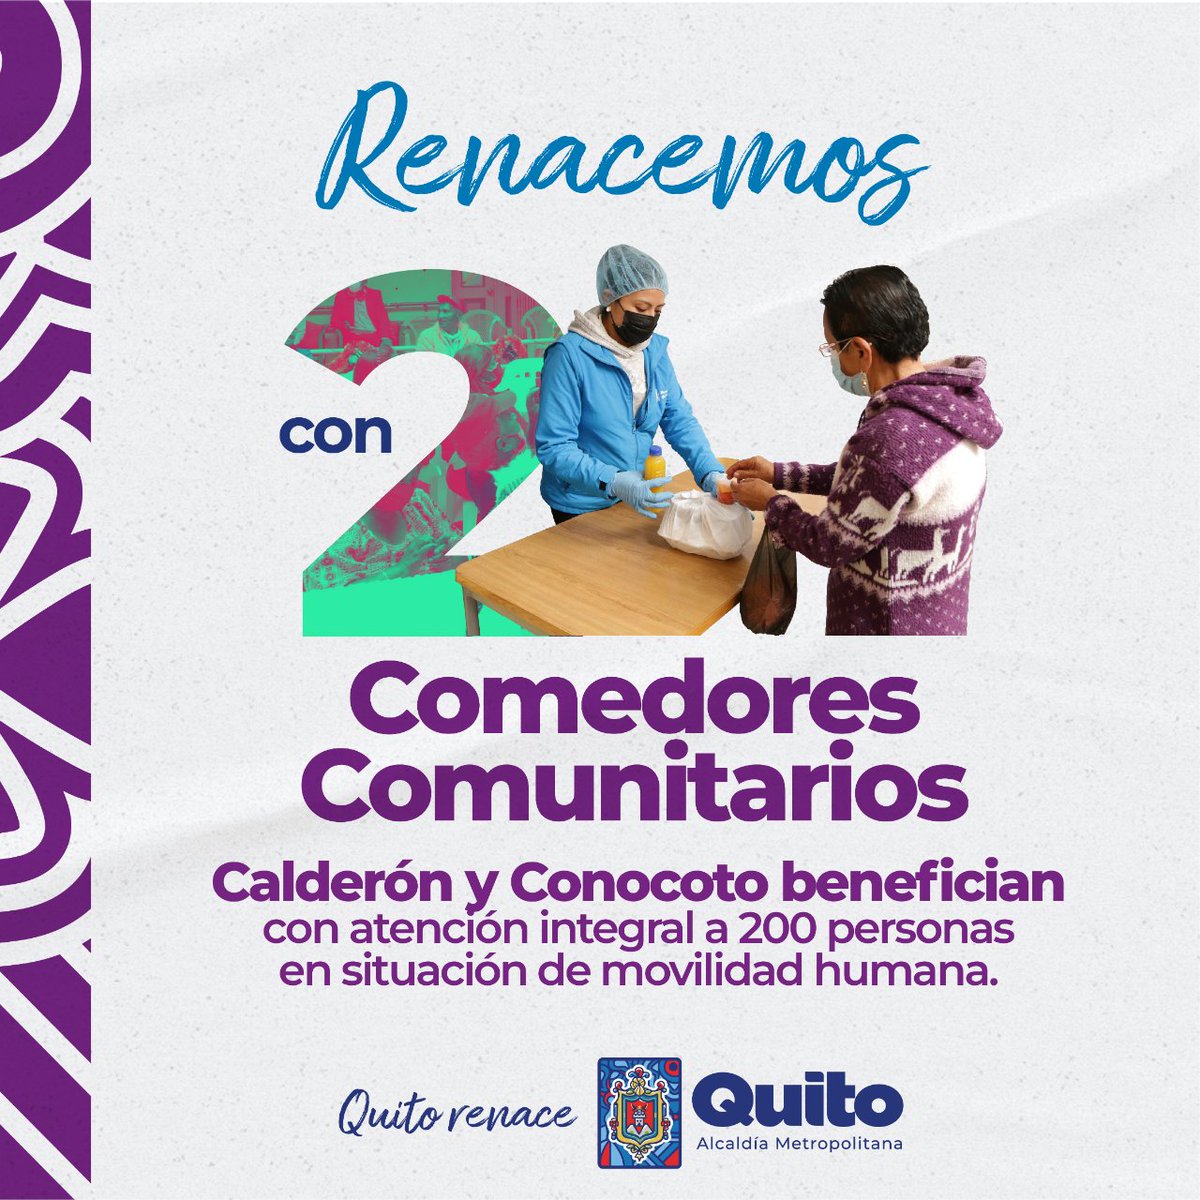 🫶👪 #365DíasContigo | Llevamos a cabo la propuesta de comedores comunitarios en Calderón y Conocoto beneficiando con atención integral a 200 personas en situación de movilidad humana. #QuitoRenace